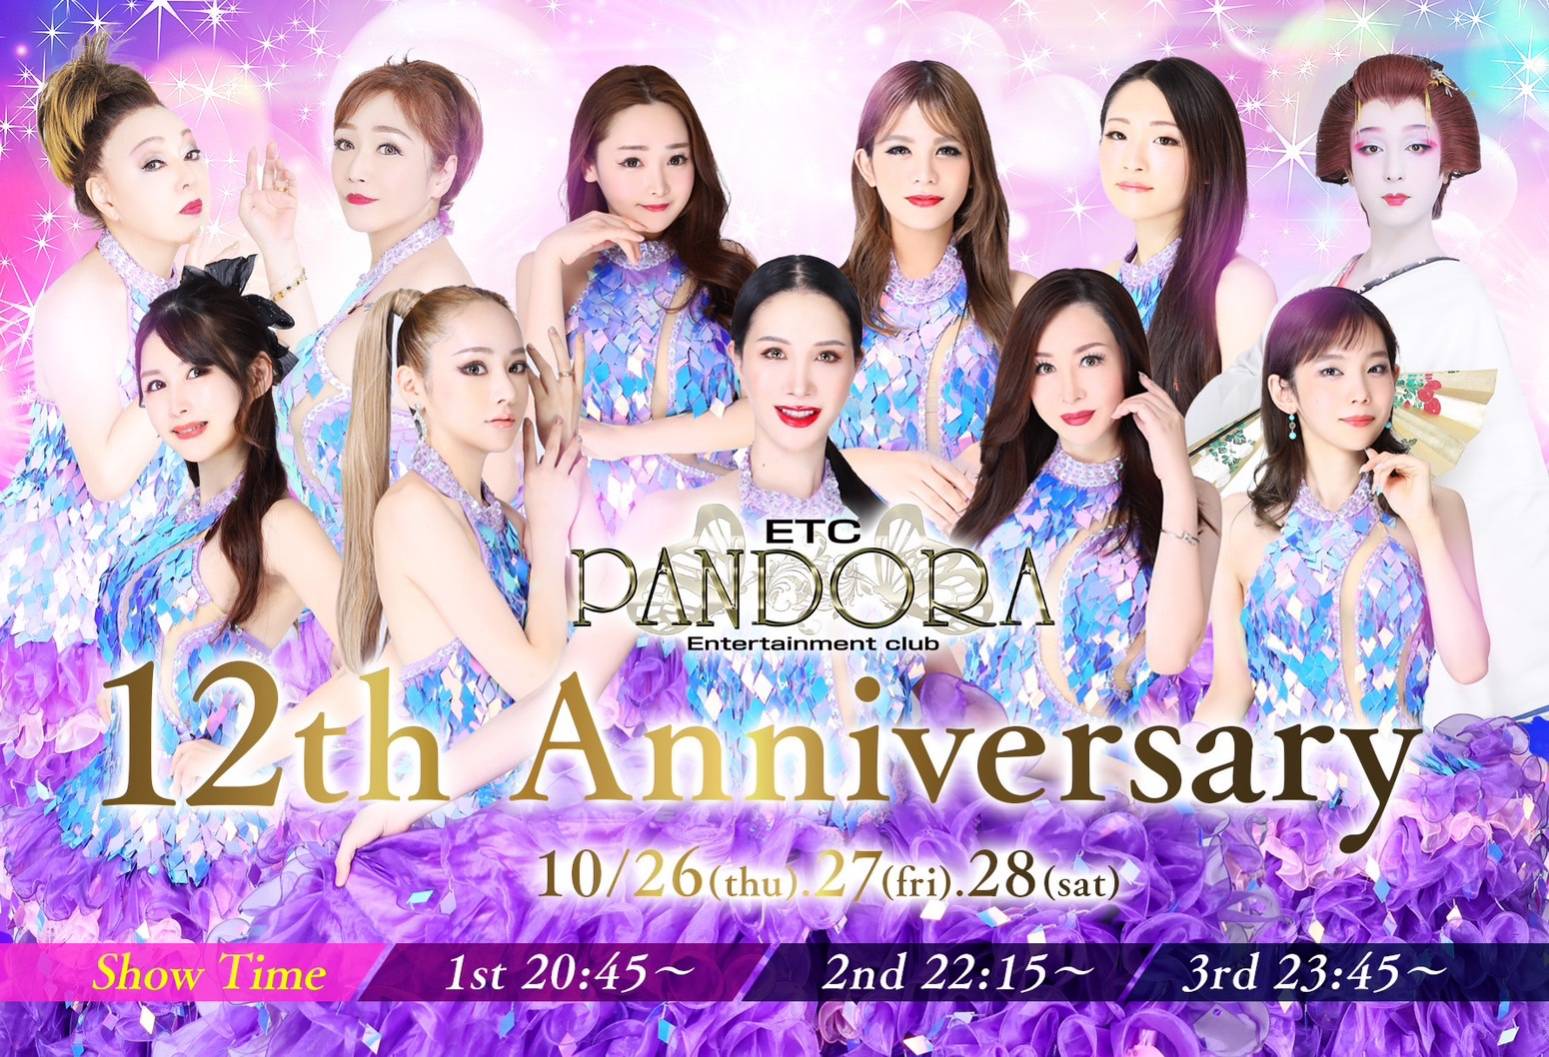 PANDORA 12th Anniversary